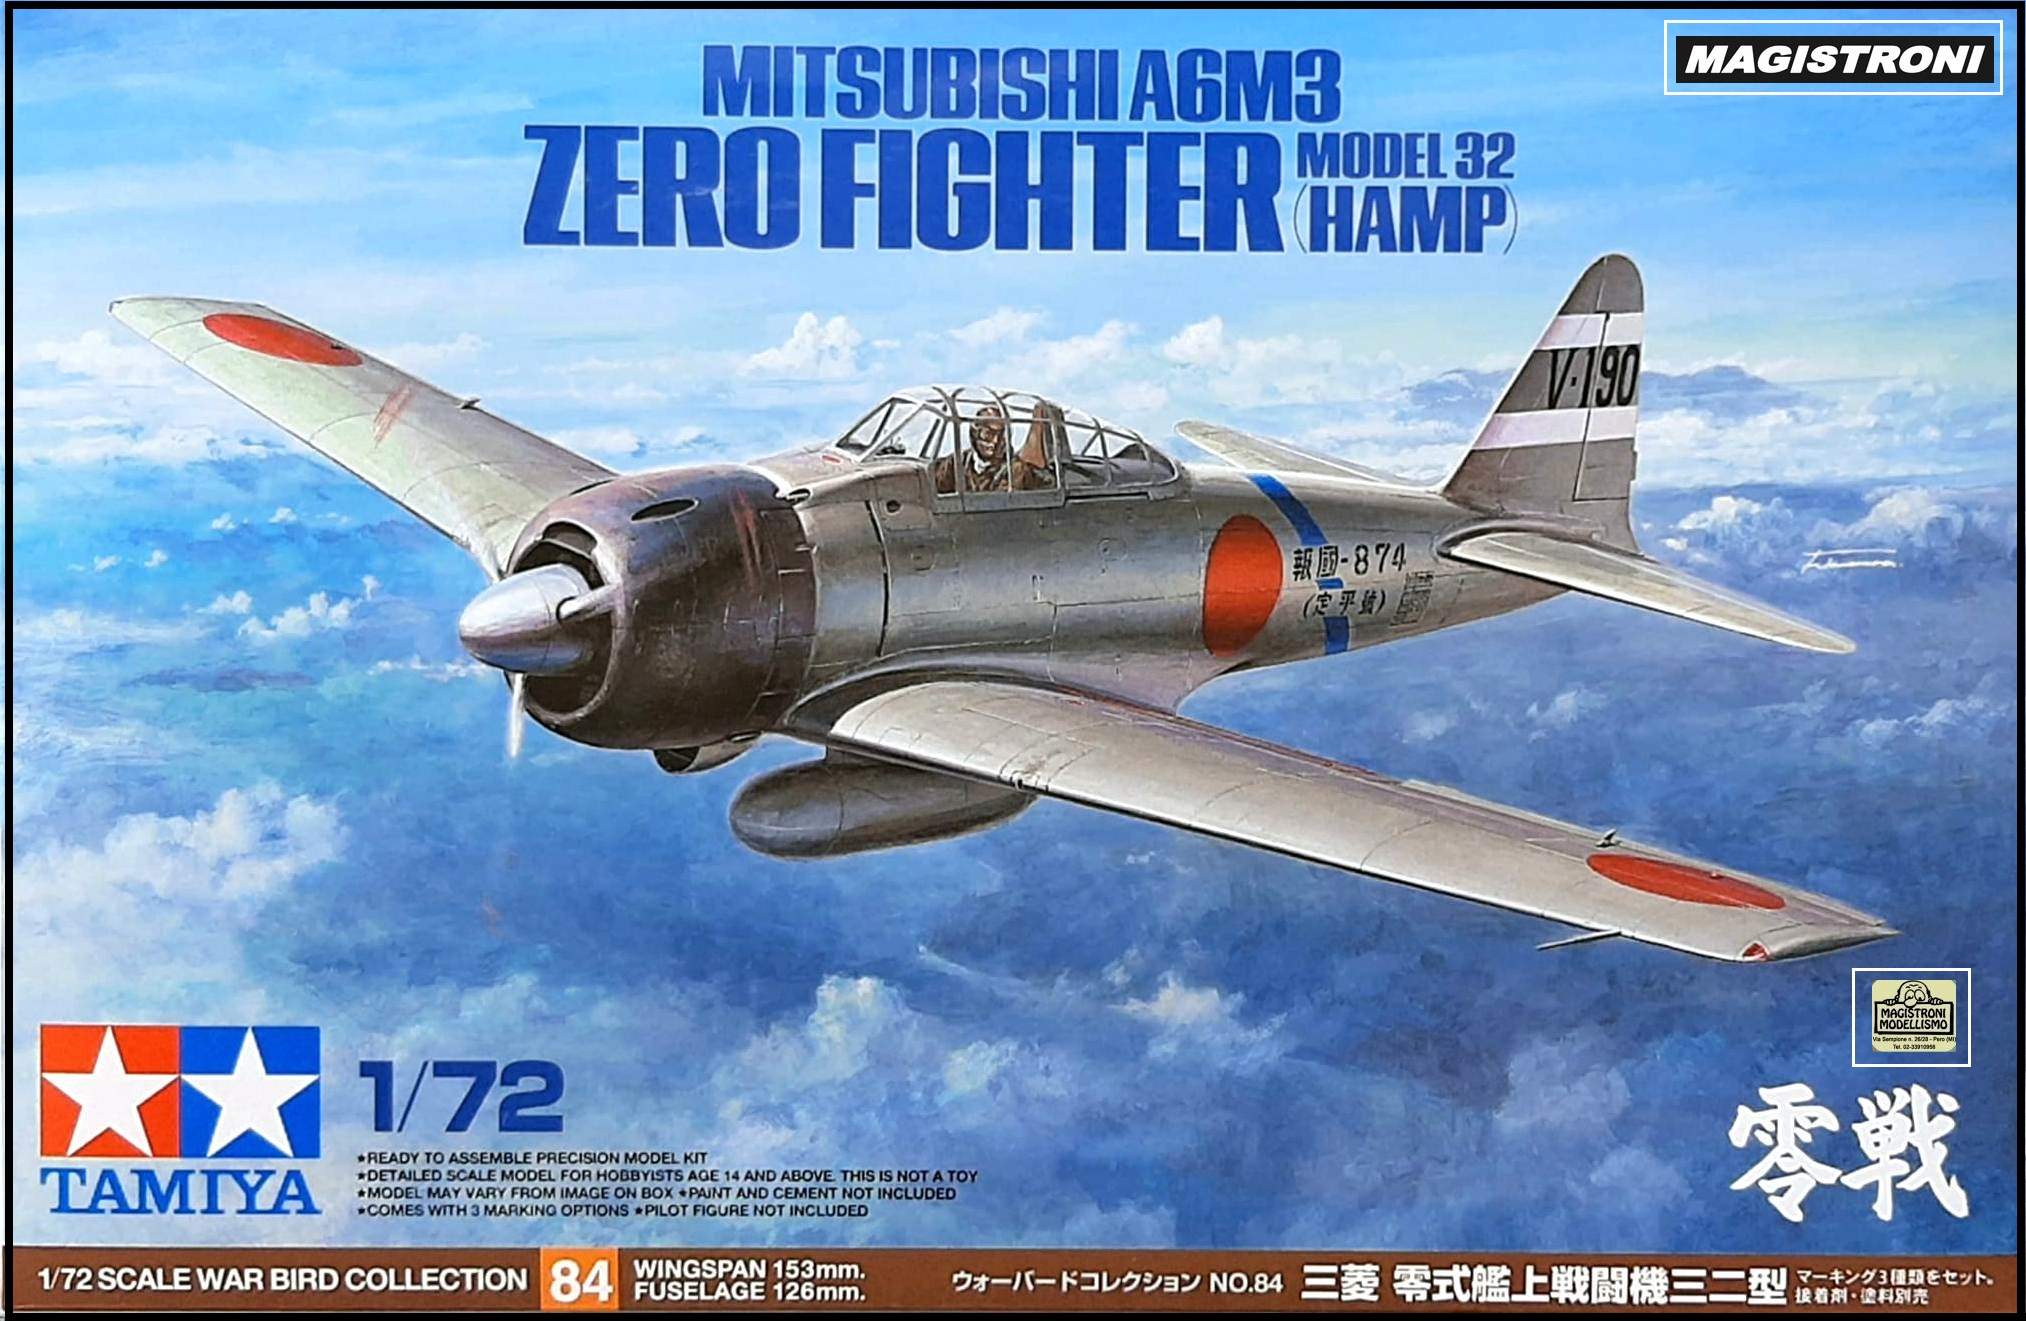 MITSUBISHI A6M3 ZERO FIGHTER Model 32 (HAMP)